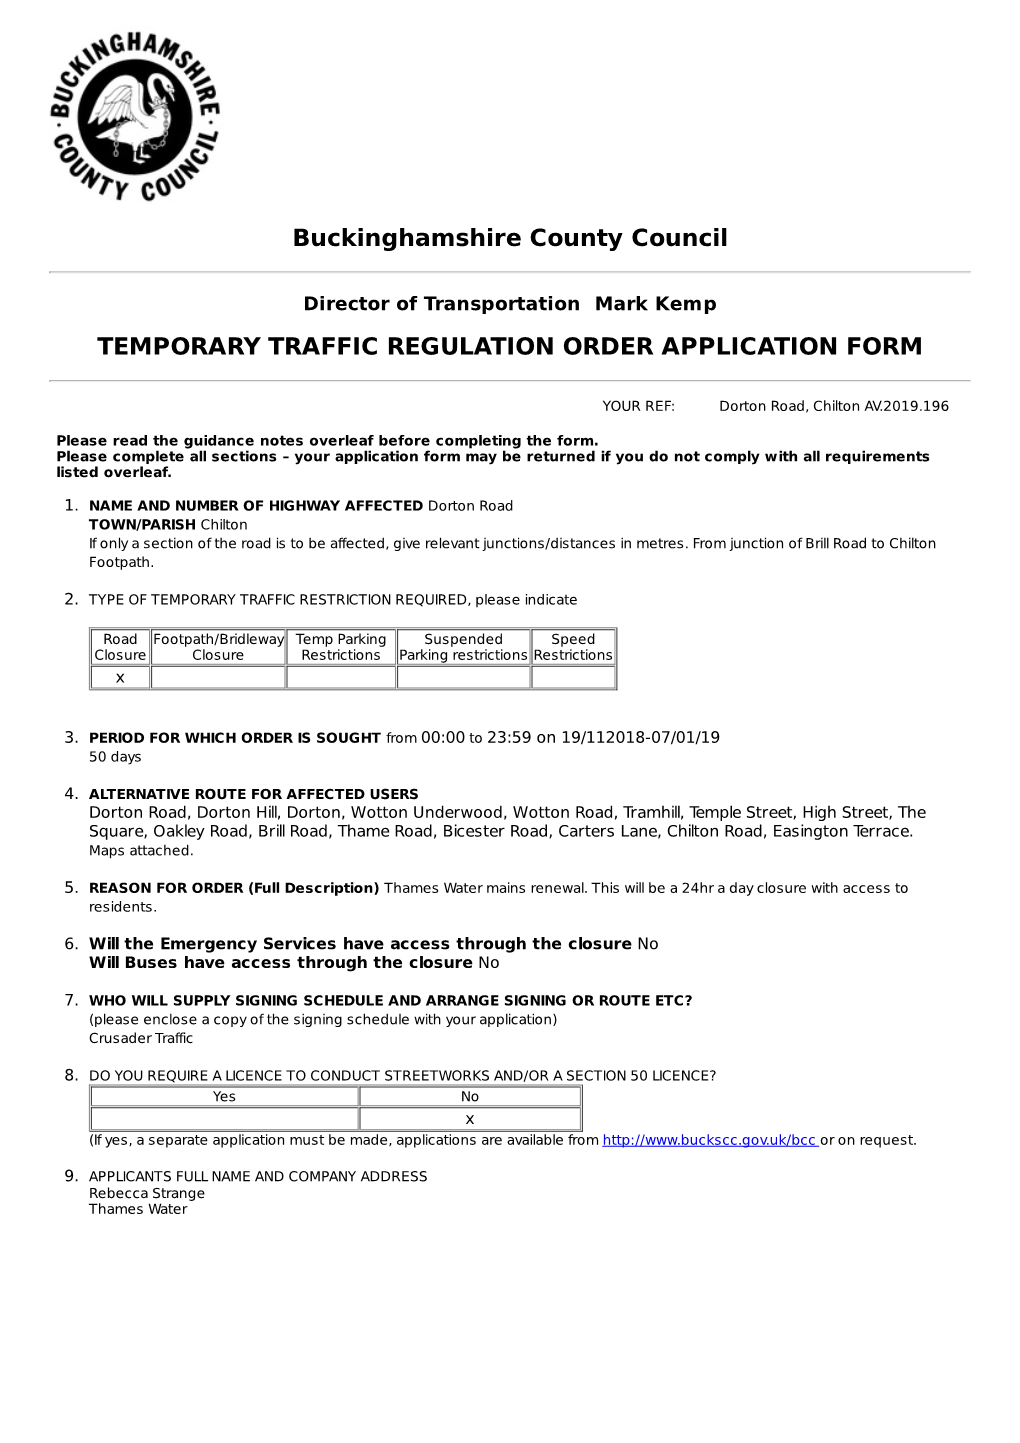 Temporary Traffic Regulation Order Application Form